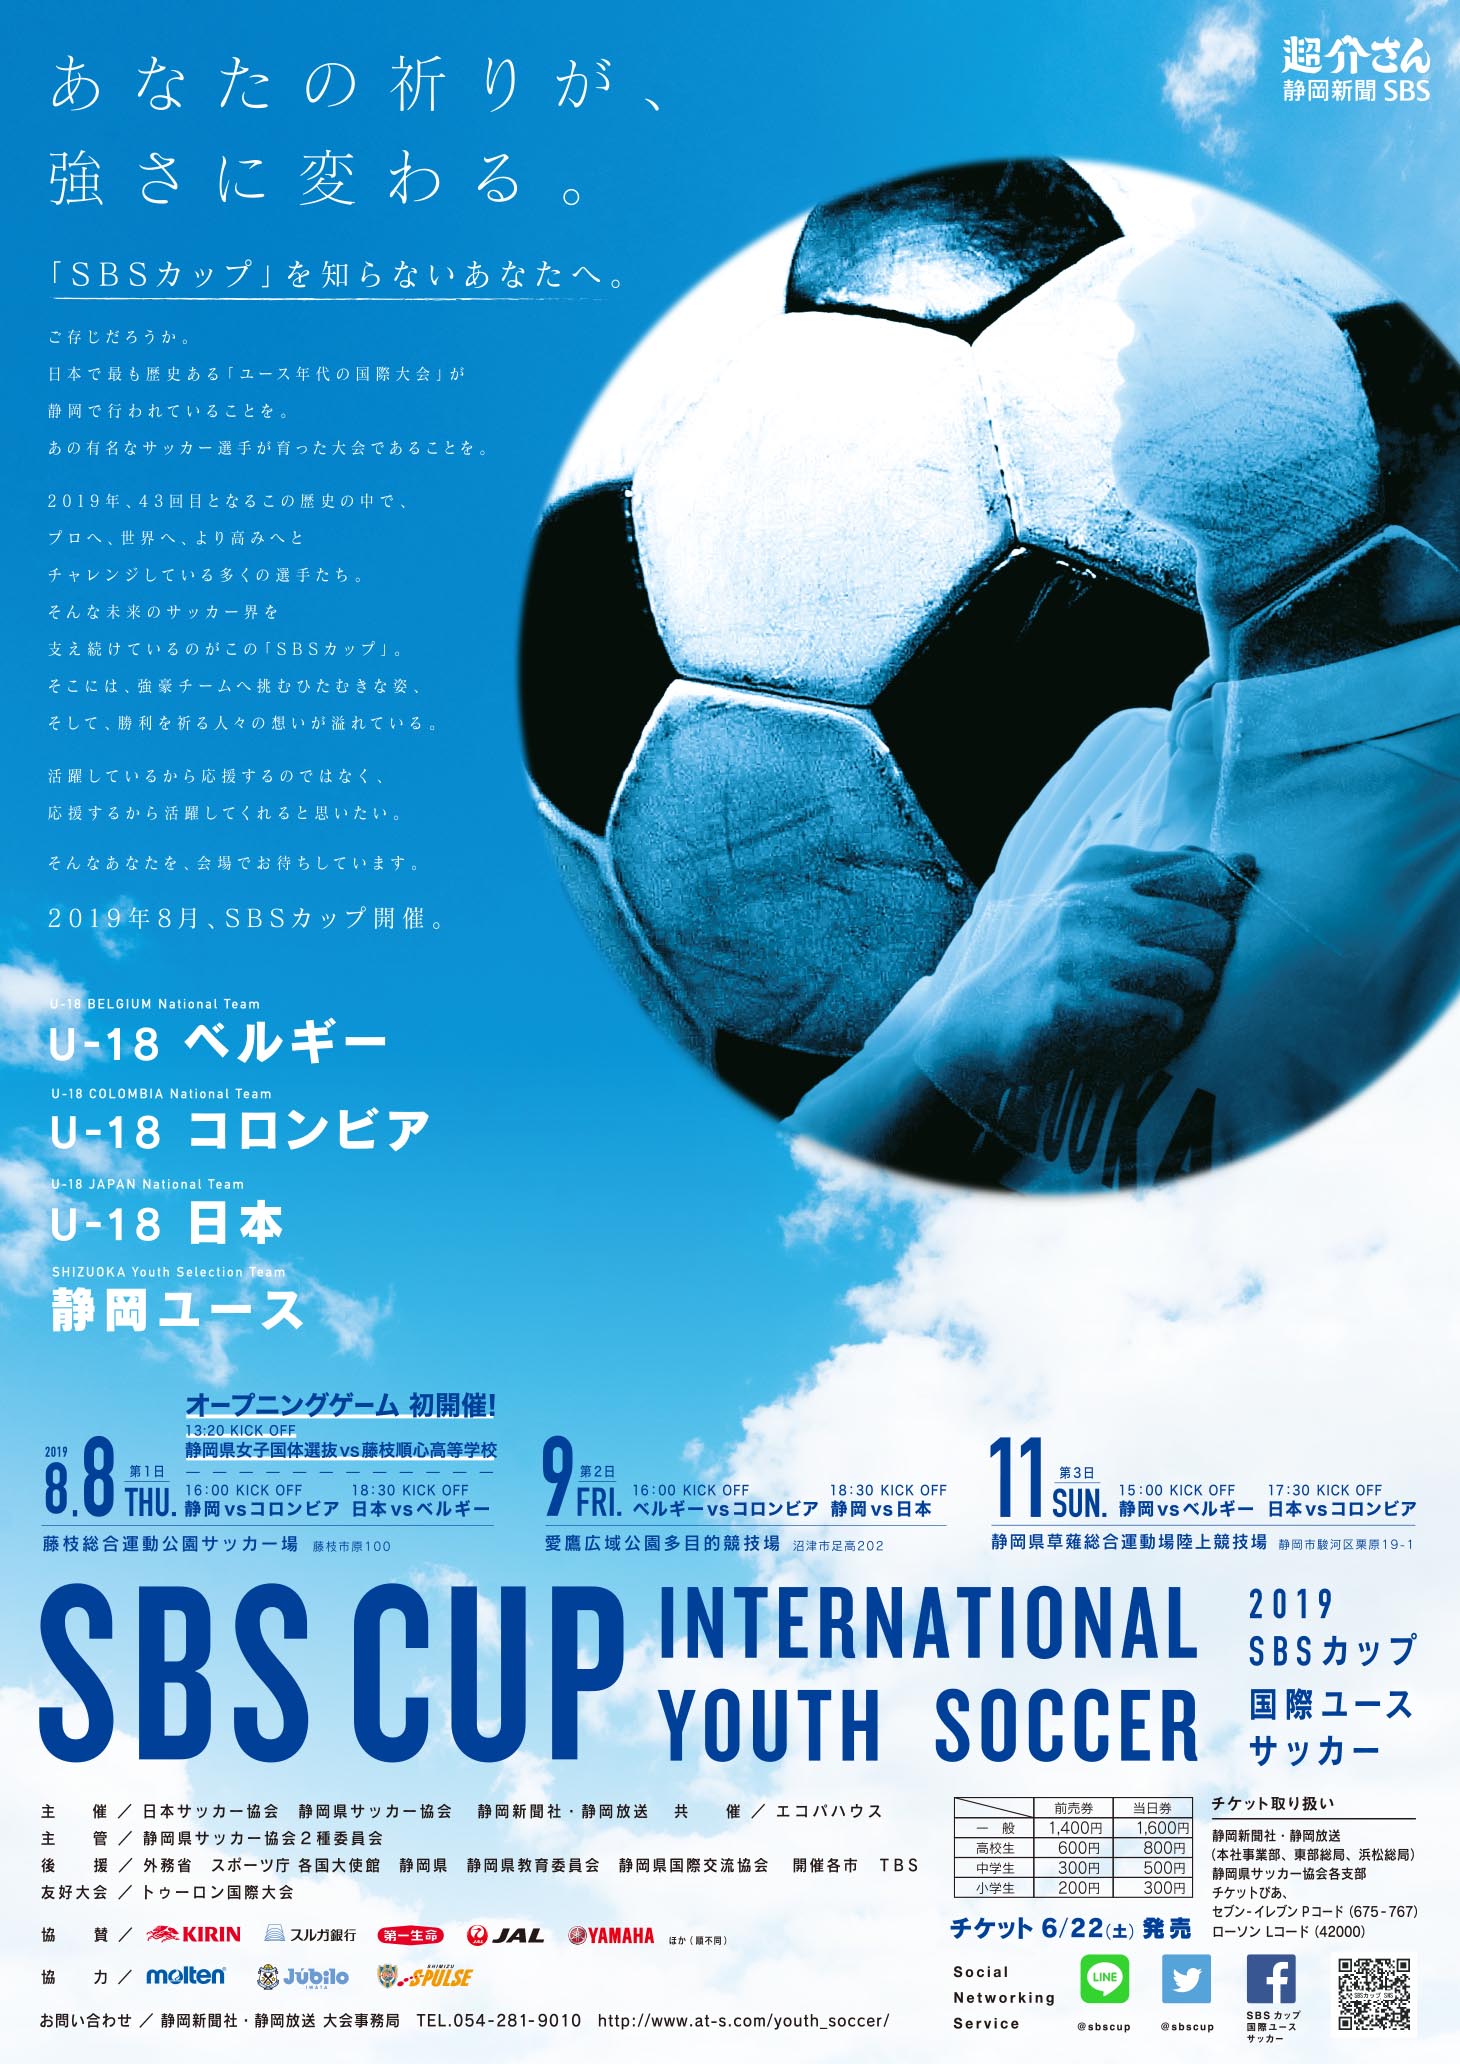 アーカイブ Sbsカップ国際ユースサッカー